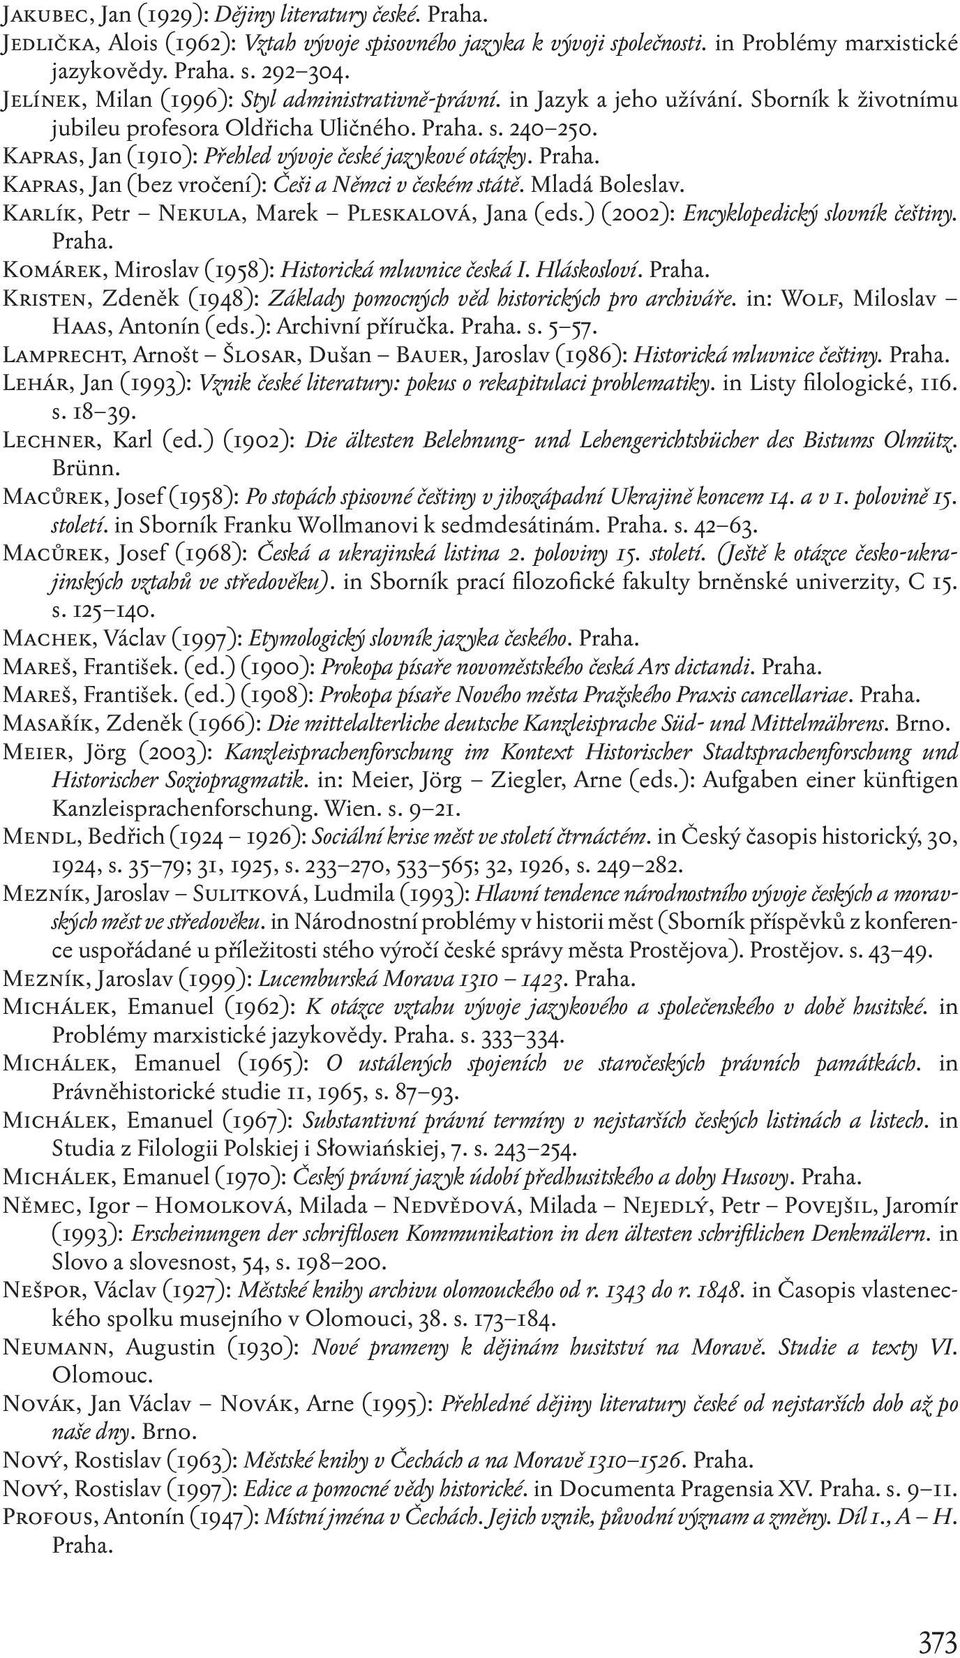 Kapras, Jan (1910): Přehled vývoje české jazykové otázky. Kapras, Jan (bez vročení): Češi a Němci v českém státě. Mladá Boleslav. Karlík, Petr Nekula, Marek Pleskalová, Jana (eds.